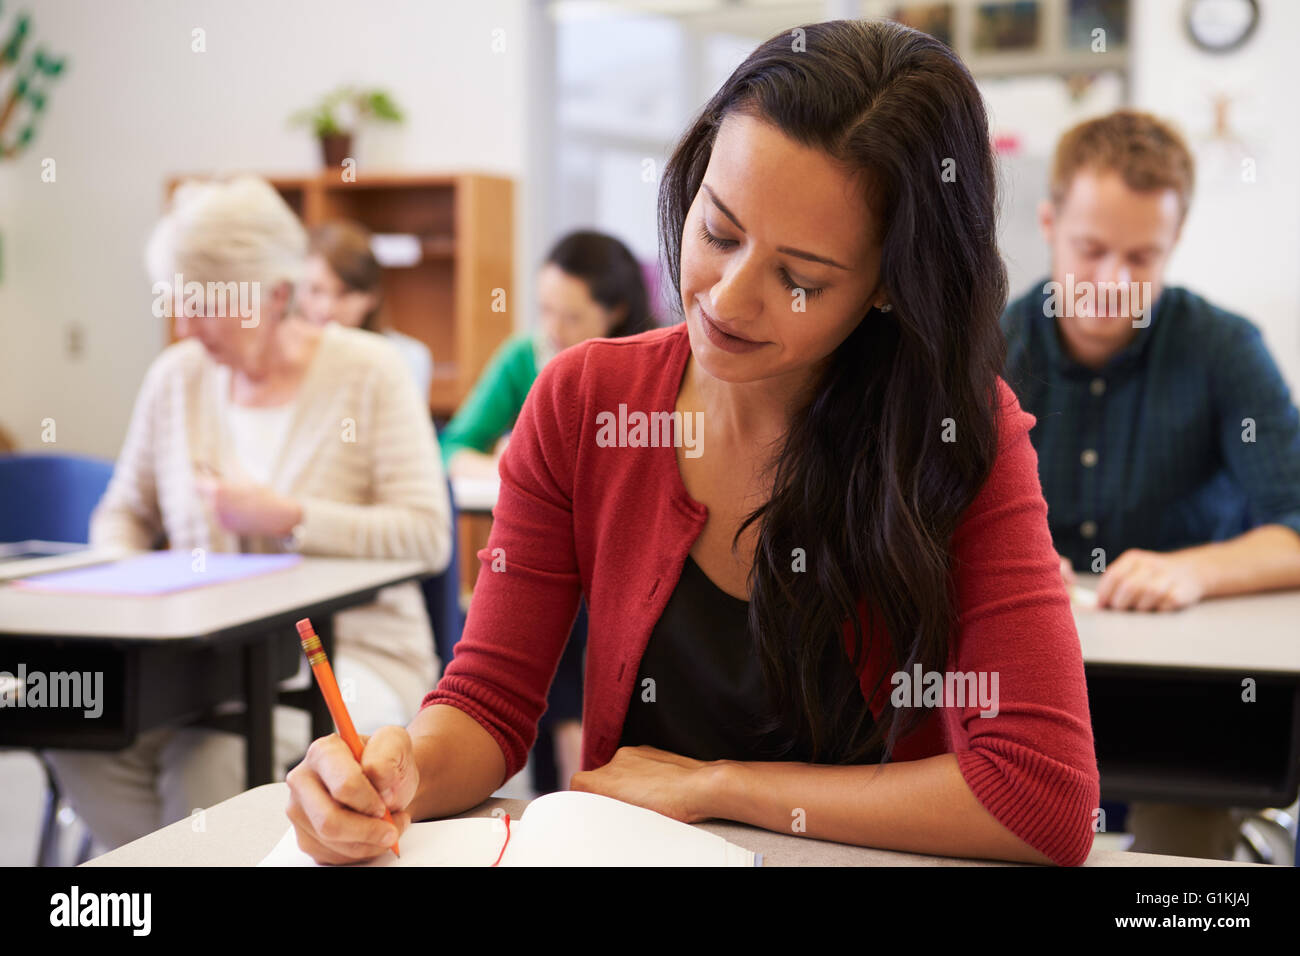 Hispanic woman studying at un cours pour adultes Banque D'Images